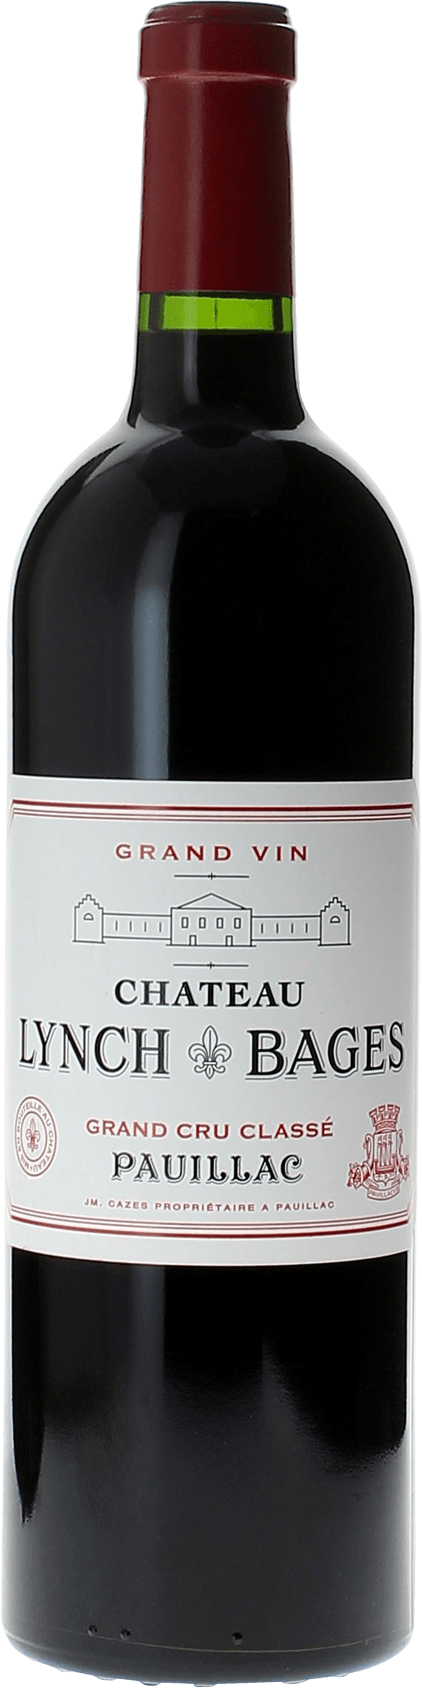 Lynch bages 2013 5 me Grand cru class Pauillac, Bordeaux rouge